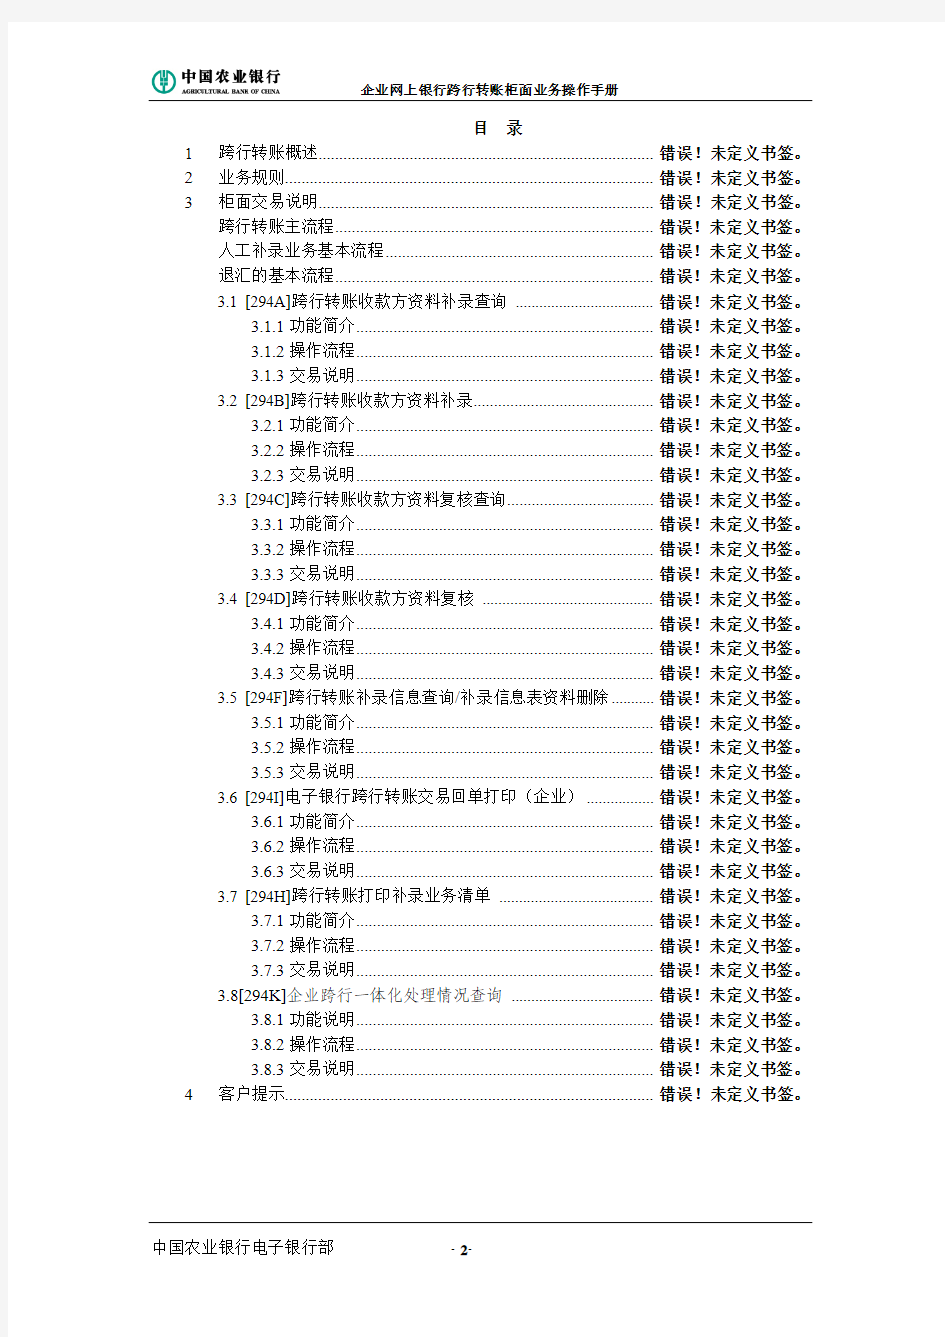 中国农业银行企业网上银行跨行转账柜面业务操作手册